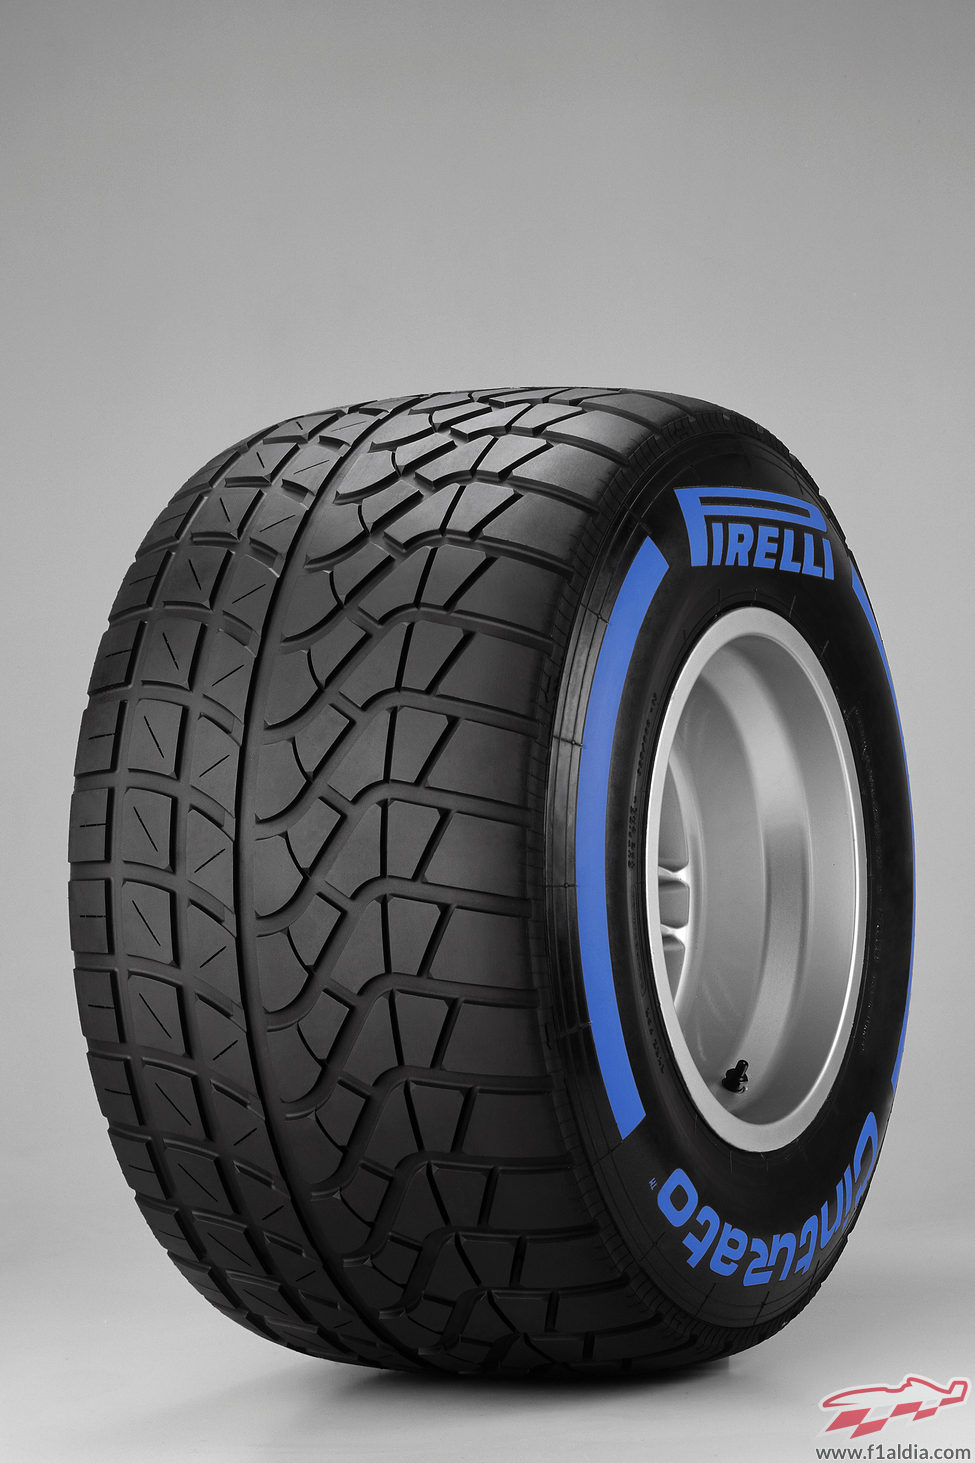 Neumático Pirelli de lluvia extrema para 2013